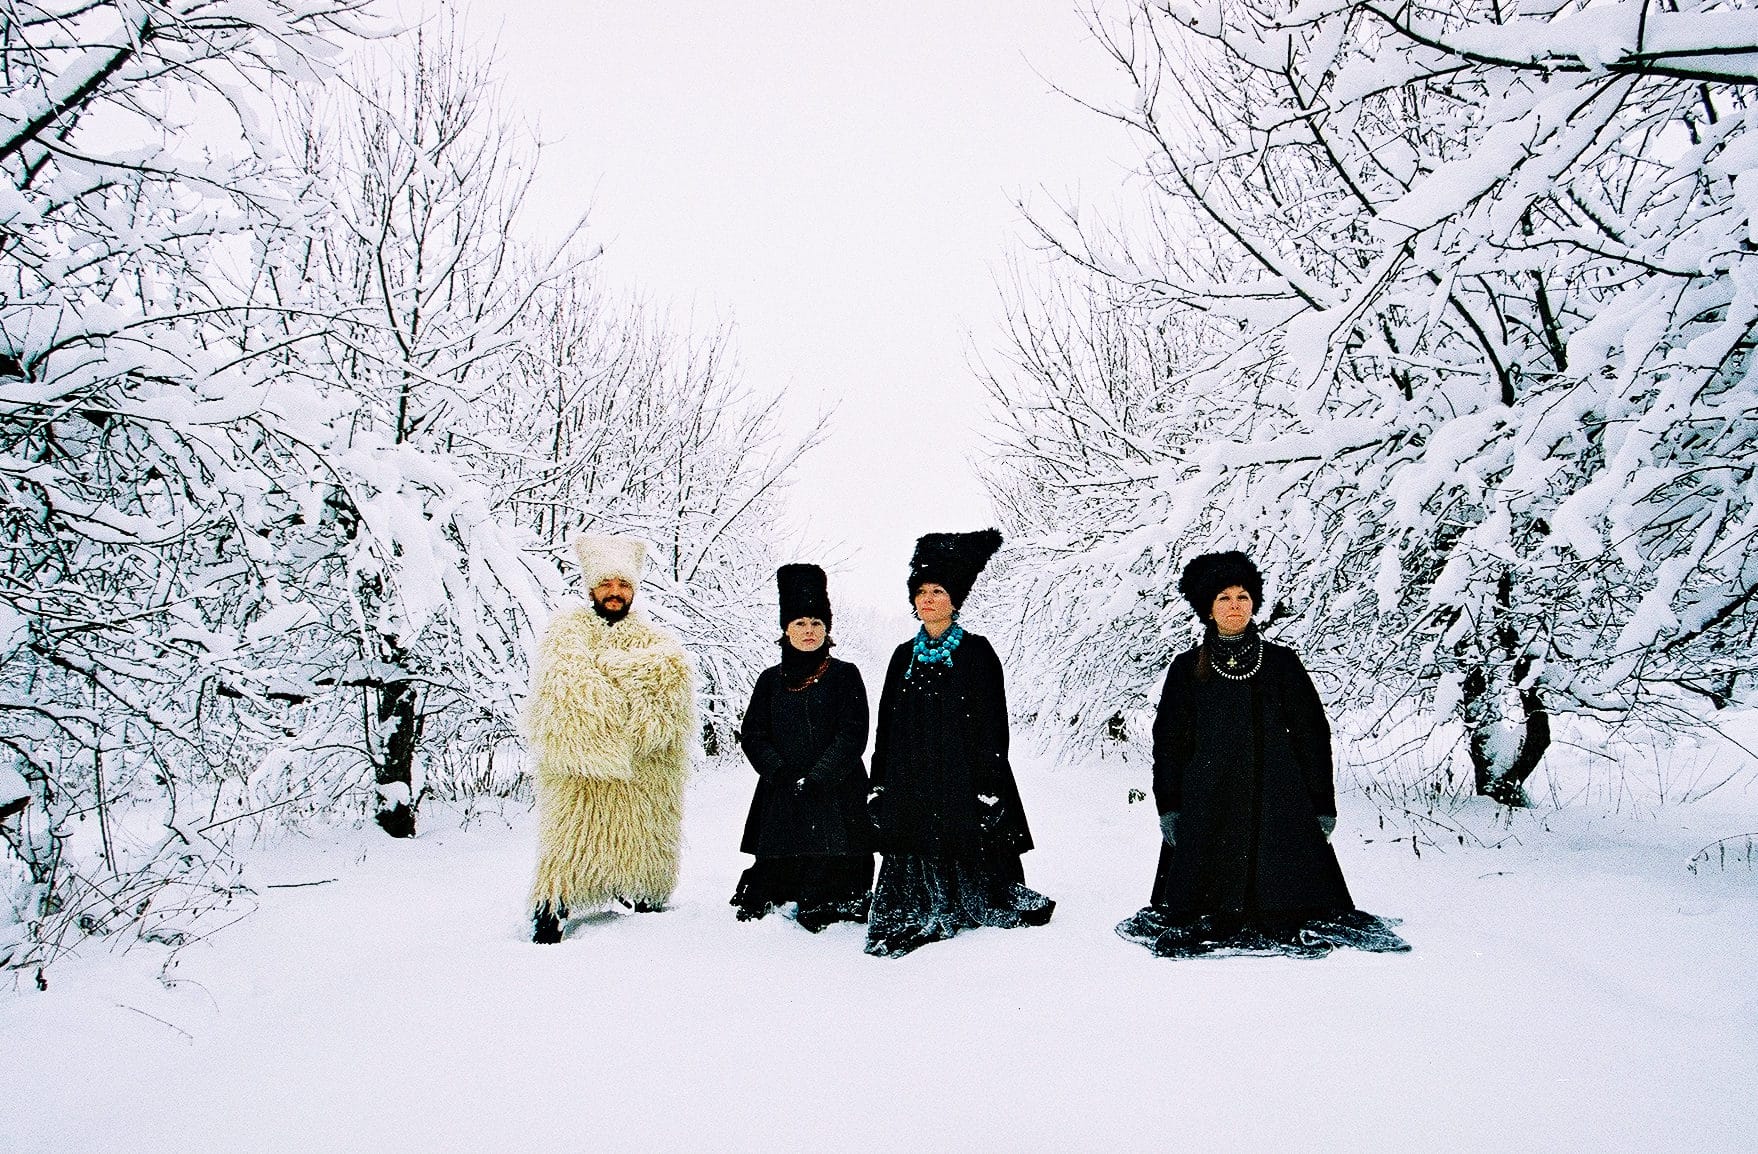 ici le groupe dakhabrakha pose dans la neige vêtus de fourrures noires et blanches